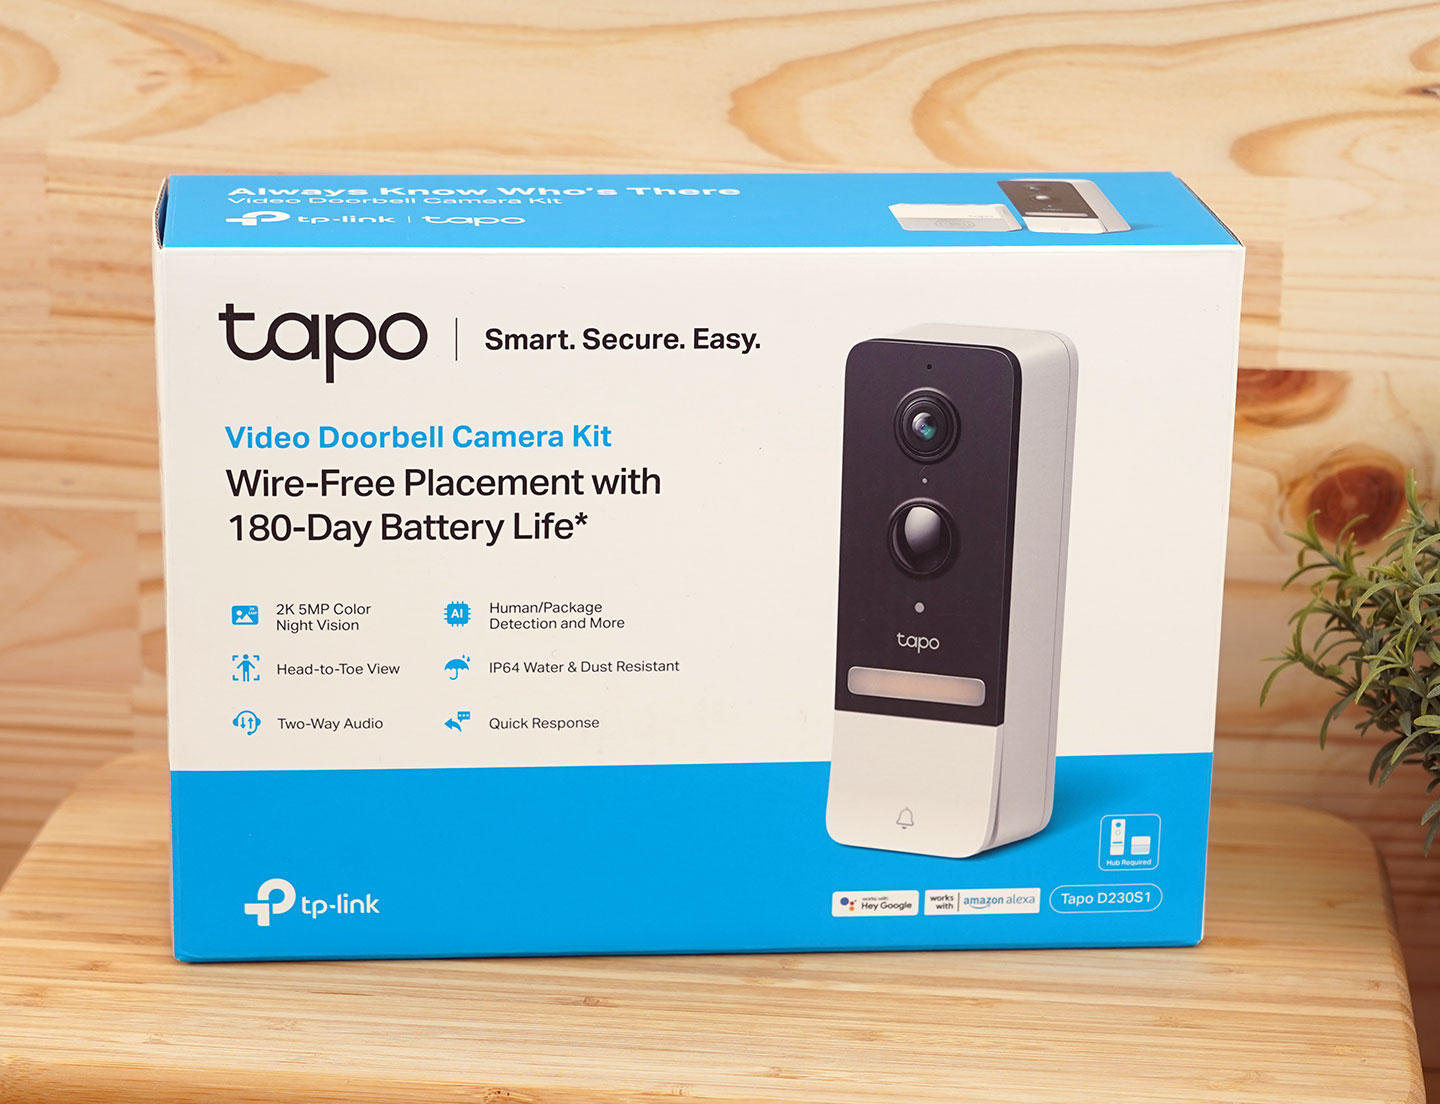 TP-Link Tapo D230S1 智慧門鈴的外盒包裝延續了 Tapo 系列的藍白配色，品牌別度相當高，面可以看到產品本體與特色說明。 ▲ TP-Link Tapo D230S1 智慧門鈴具備無線安裝的便利性，內建可拆卸充電電池能提供 180 天的續航，2K 500 萬畫素的夜視級鏡、廣角且能拍攝全身的視野、以及雙向通話…都是主打功能。 ▲ 外盒背面也可以看到實際拍攝畫面的示意，4:3 的比例更能呈現出完整的門外空間，也能透過 AI 偵測判別畫面上的物件，並即時提醒。 ▲ 盒內物品一覽，除了 TP-Link Tapo D230S1 智慧門鈴本體，也配了 Tapo H200 智慧網關，另外相關配件也有 D230S1 的電池 / 充電線 / 充電器，網關供電器、網路線、壁掛安裝用的壁釘與楔型背板。 ▲ TP-Link Tapo D230S1 智慧門鈴 與 Tapo H200 智慧網關外型計皆以無彩色配，計也十分簡約小巧。 ▲ TP-Link Tapo D230S1 智慧門鈴面的黑色區塊可以看到 2K 解析度 500 萬畫素鏡、麥克風、指示燈、動態偵測器與補光燈。 ▲ 面下方有電鈴按鈕。